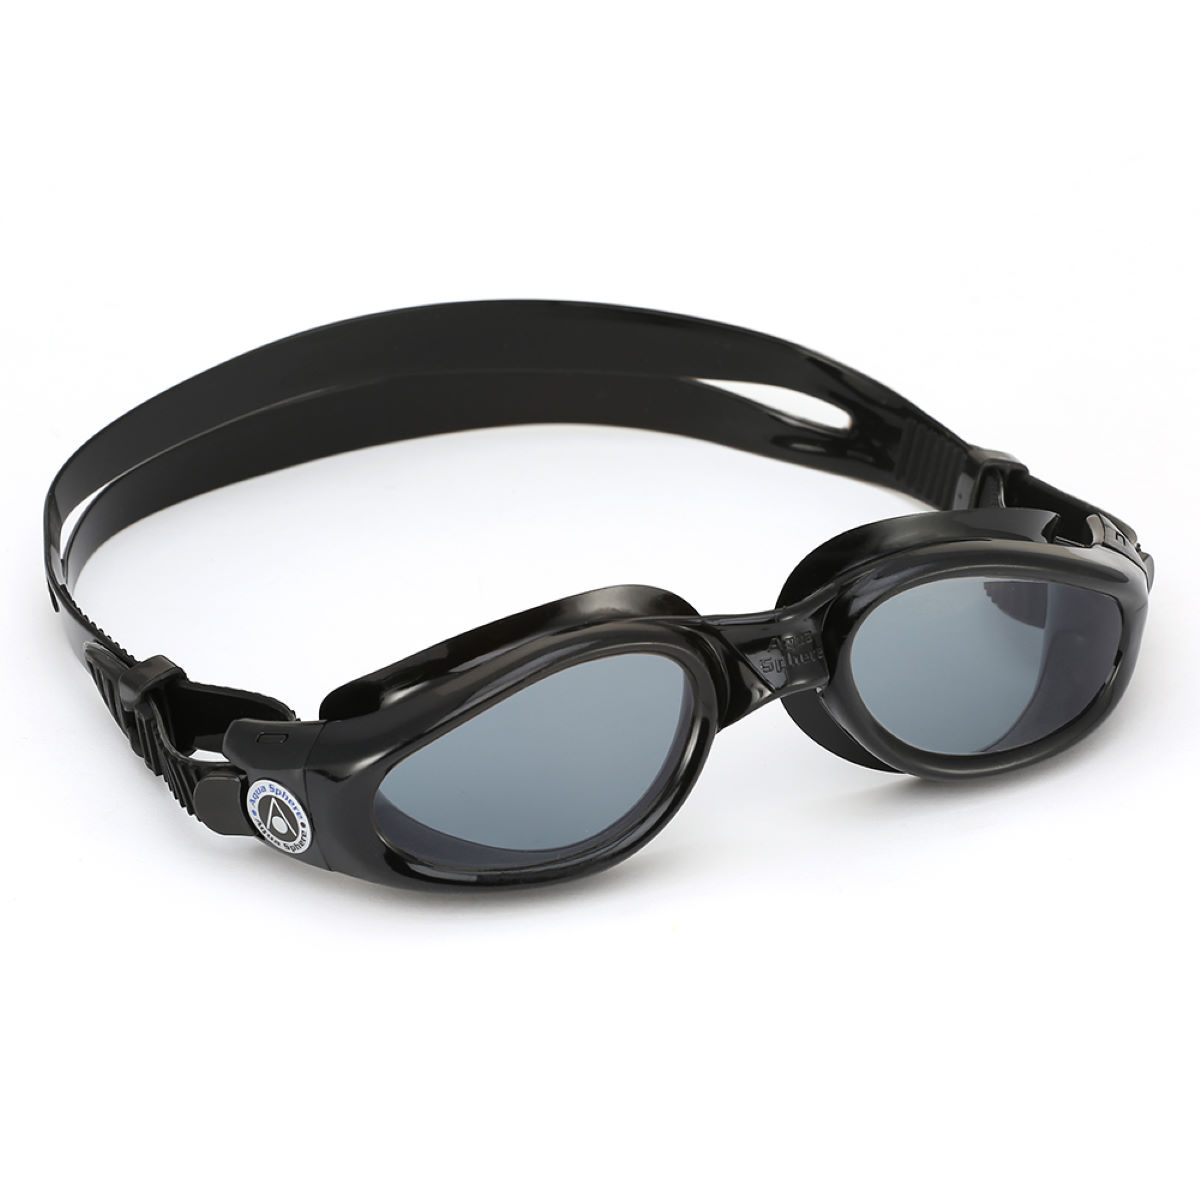 Gafas de natación Aqua Sphere Kaiman (con lentes oscuras) - Gafas